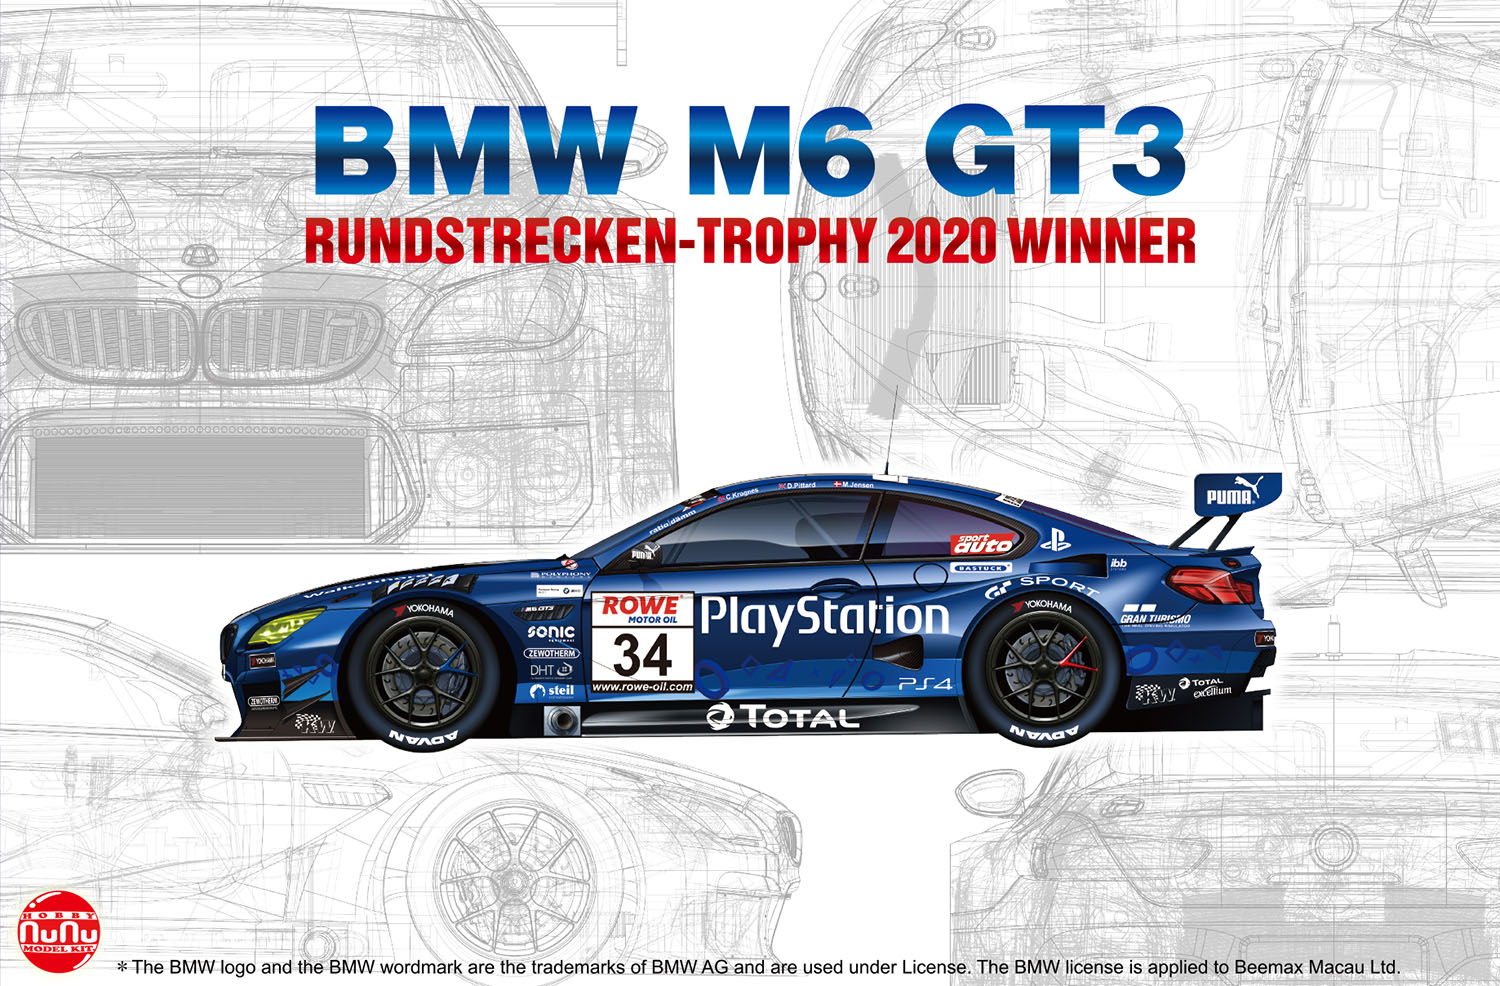 PLATZ/NUNU 1/24 BMW M6 GT3 Rundstrecken-Trophy 2020